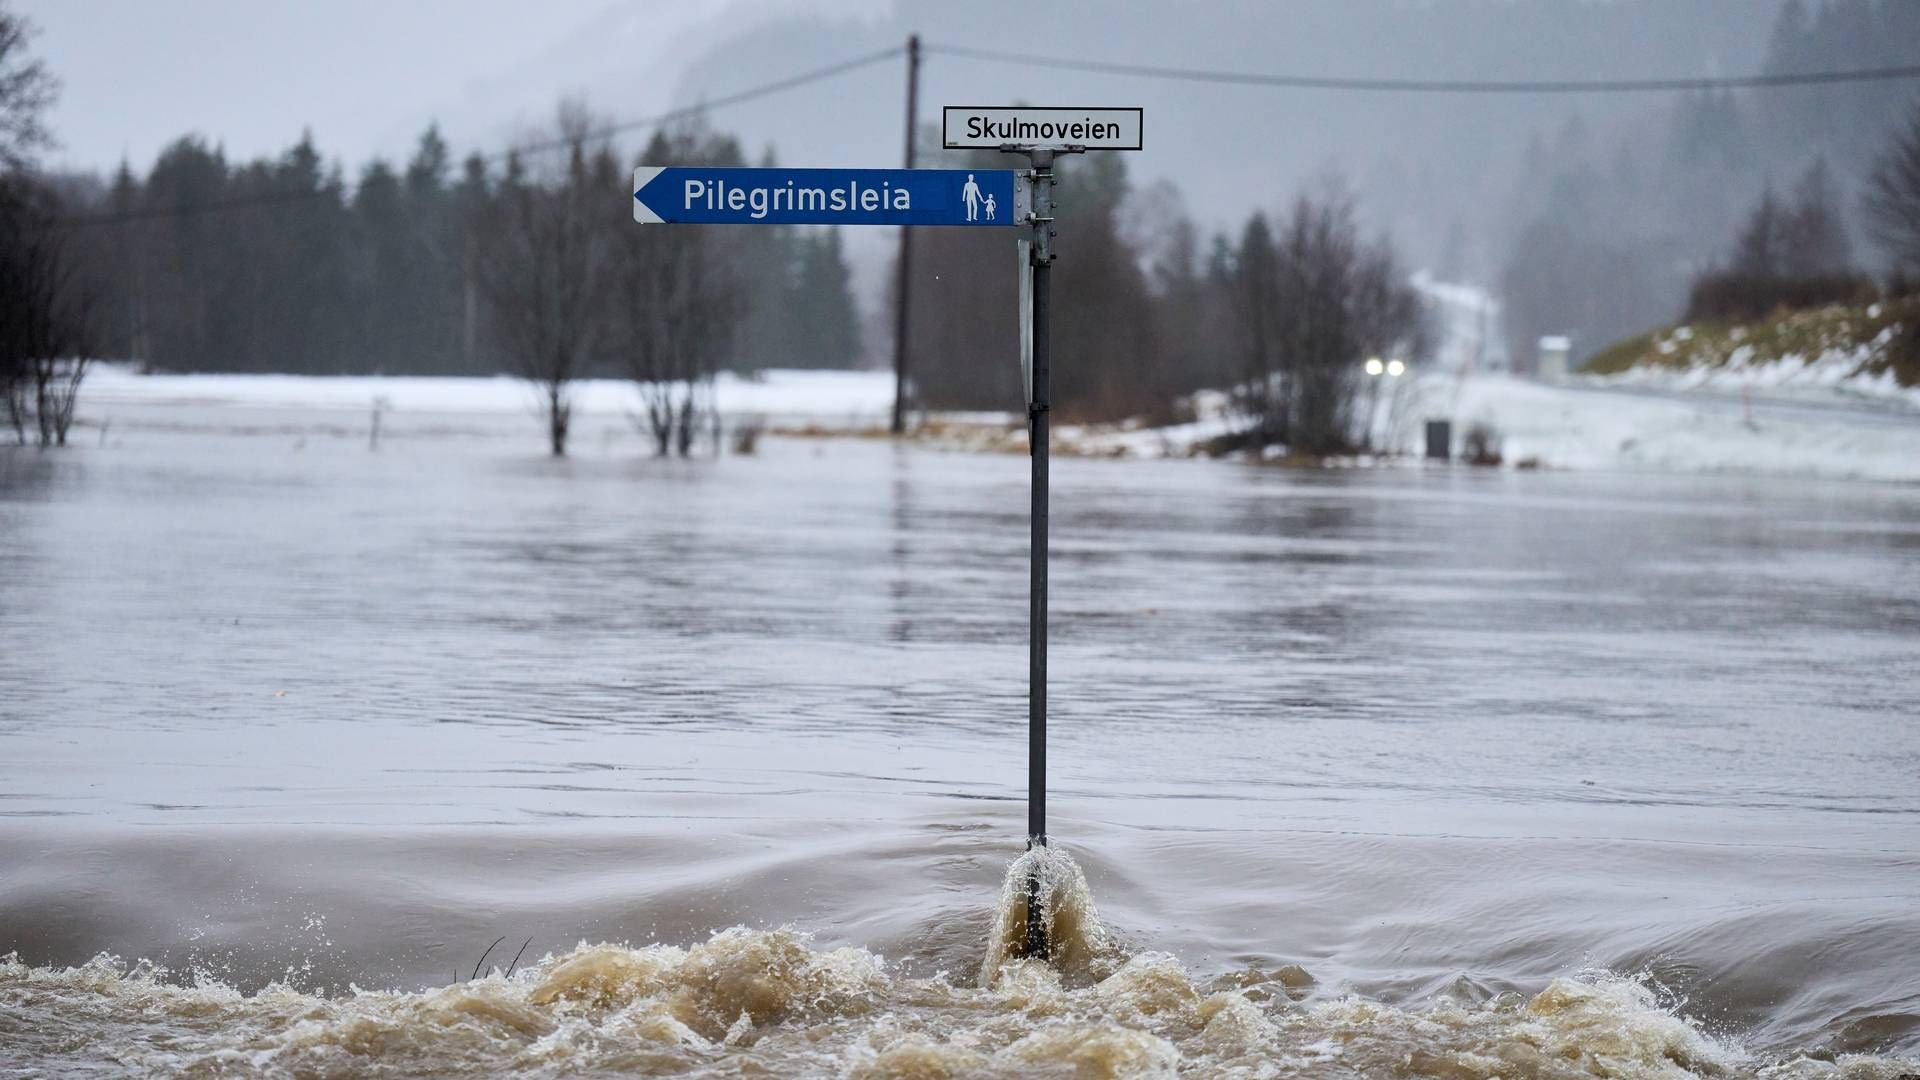 EKSTREMVÆRET GYDA: Fv700 sør for Svorkmo er oversvømmet ved avkjøring Skulmoveien. | Foto: Ole Martin Wold / NTB